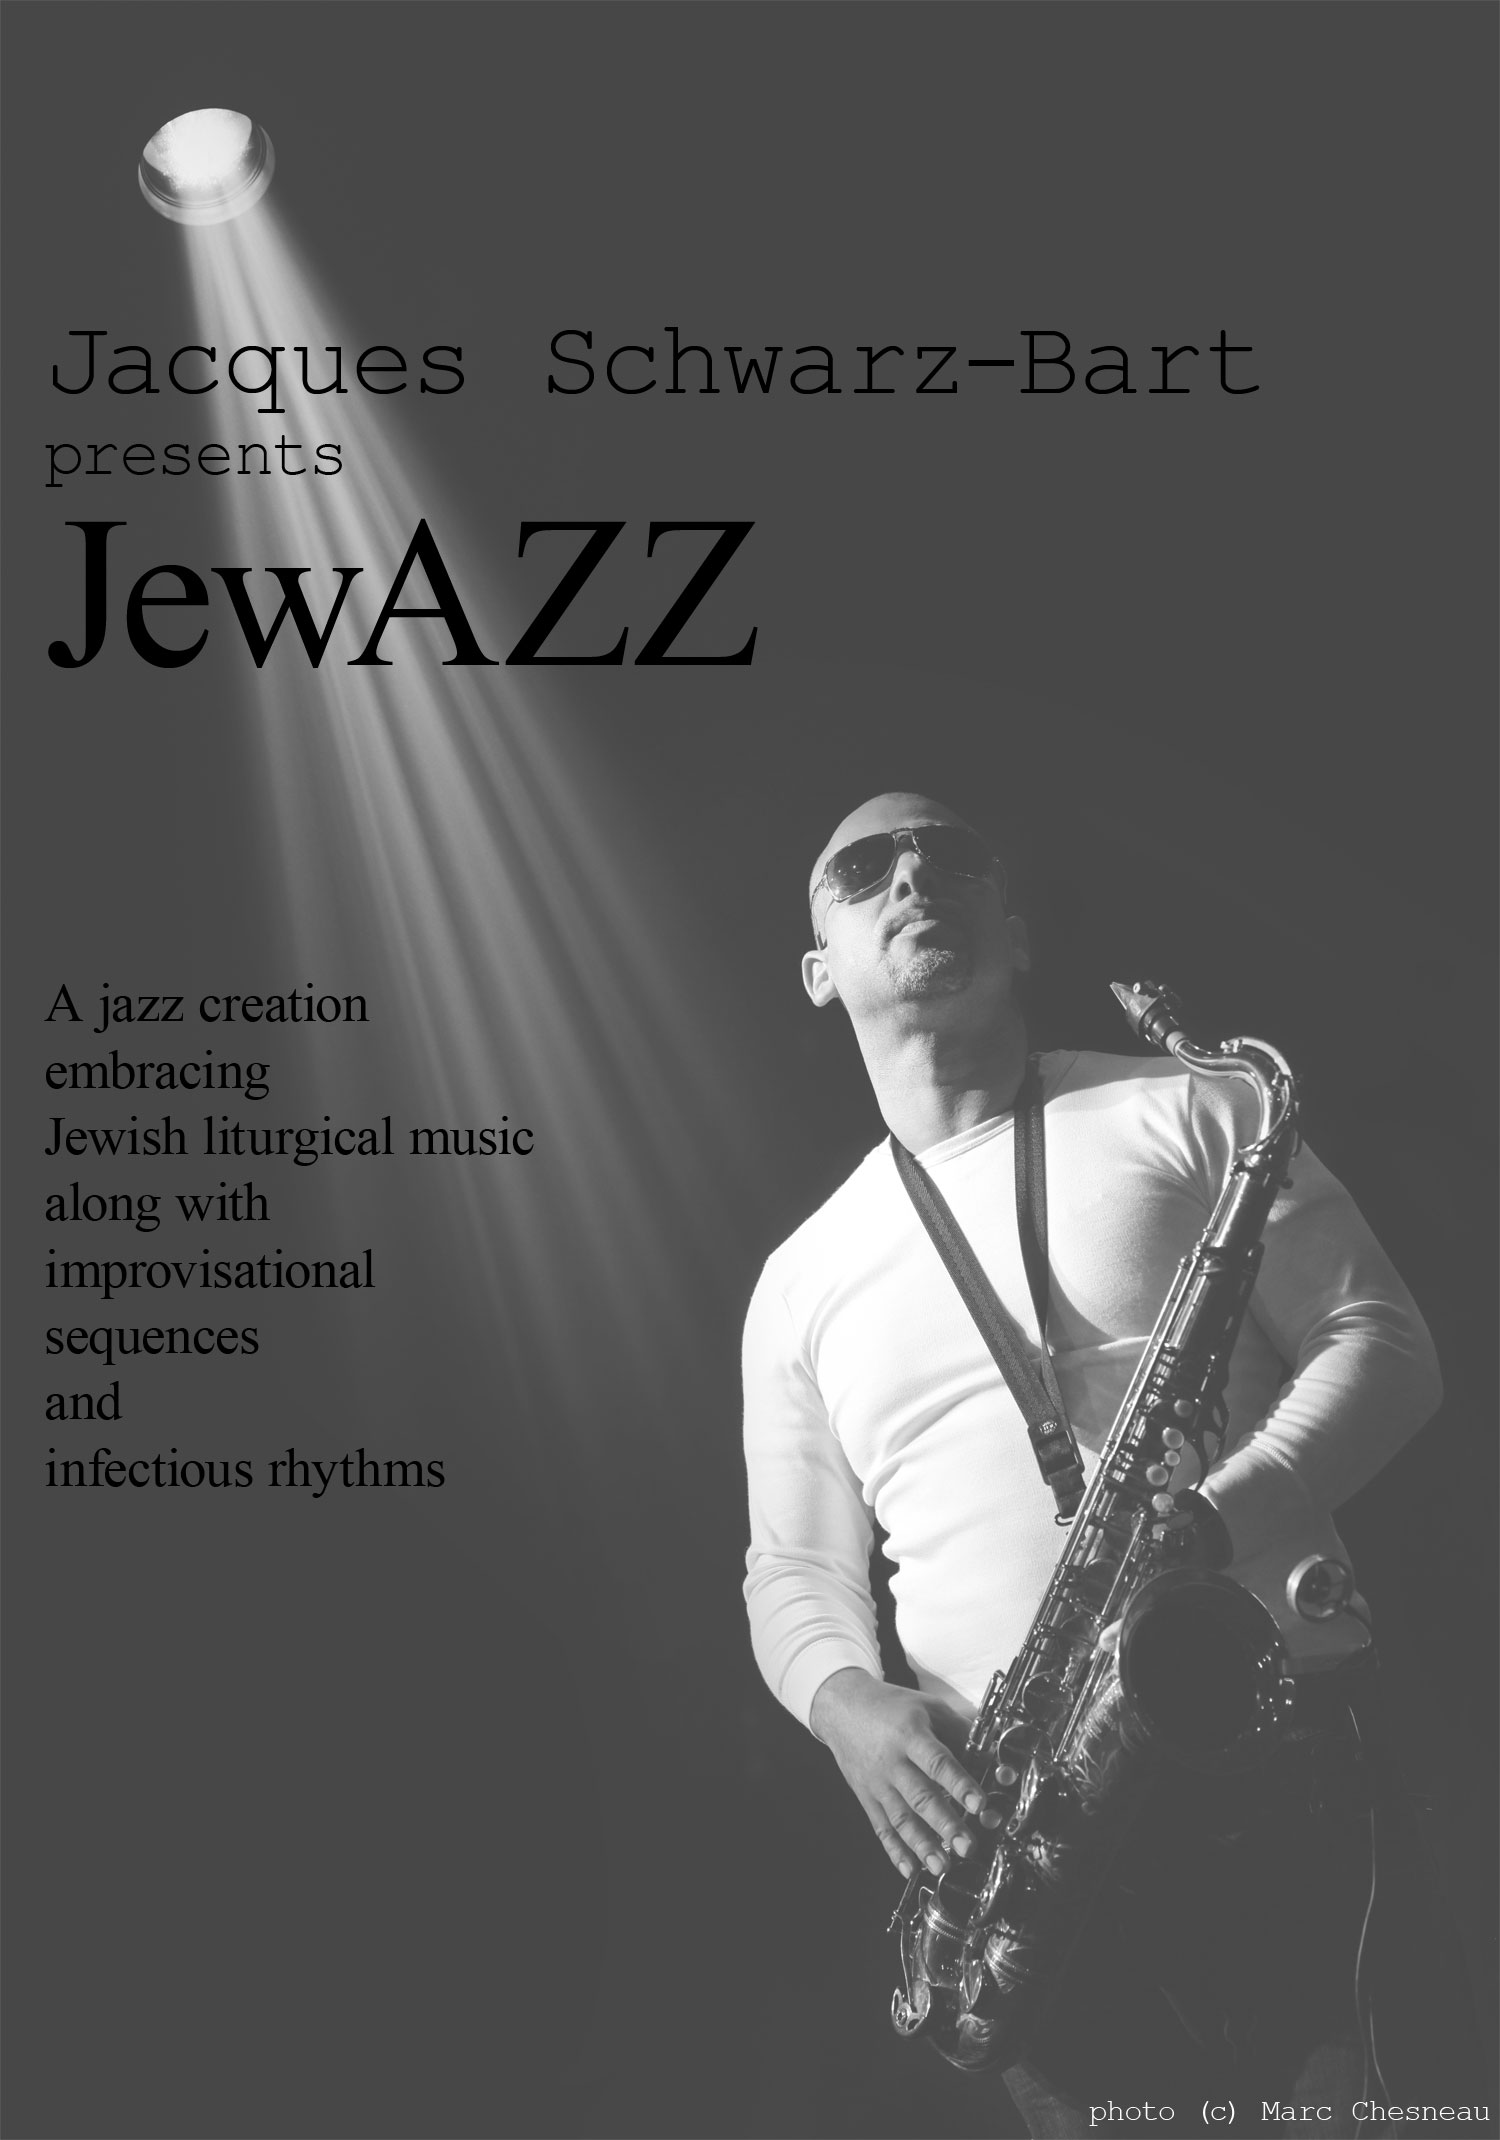 Jacques Schwarz-Bart & Jewazz